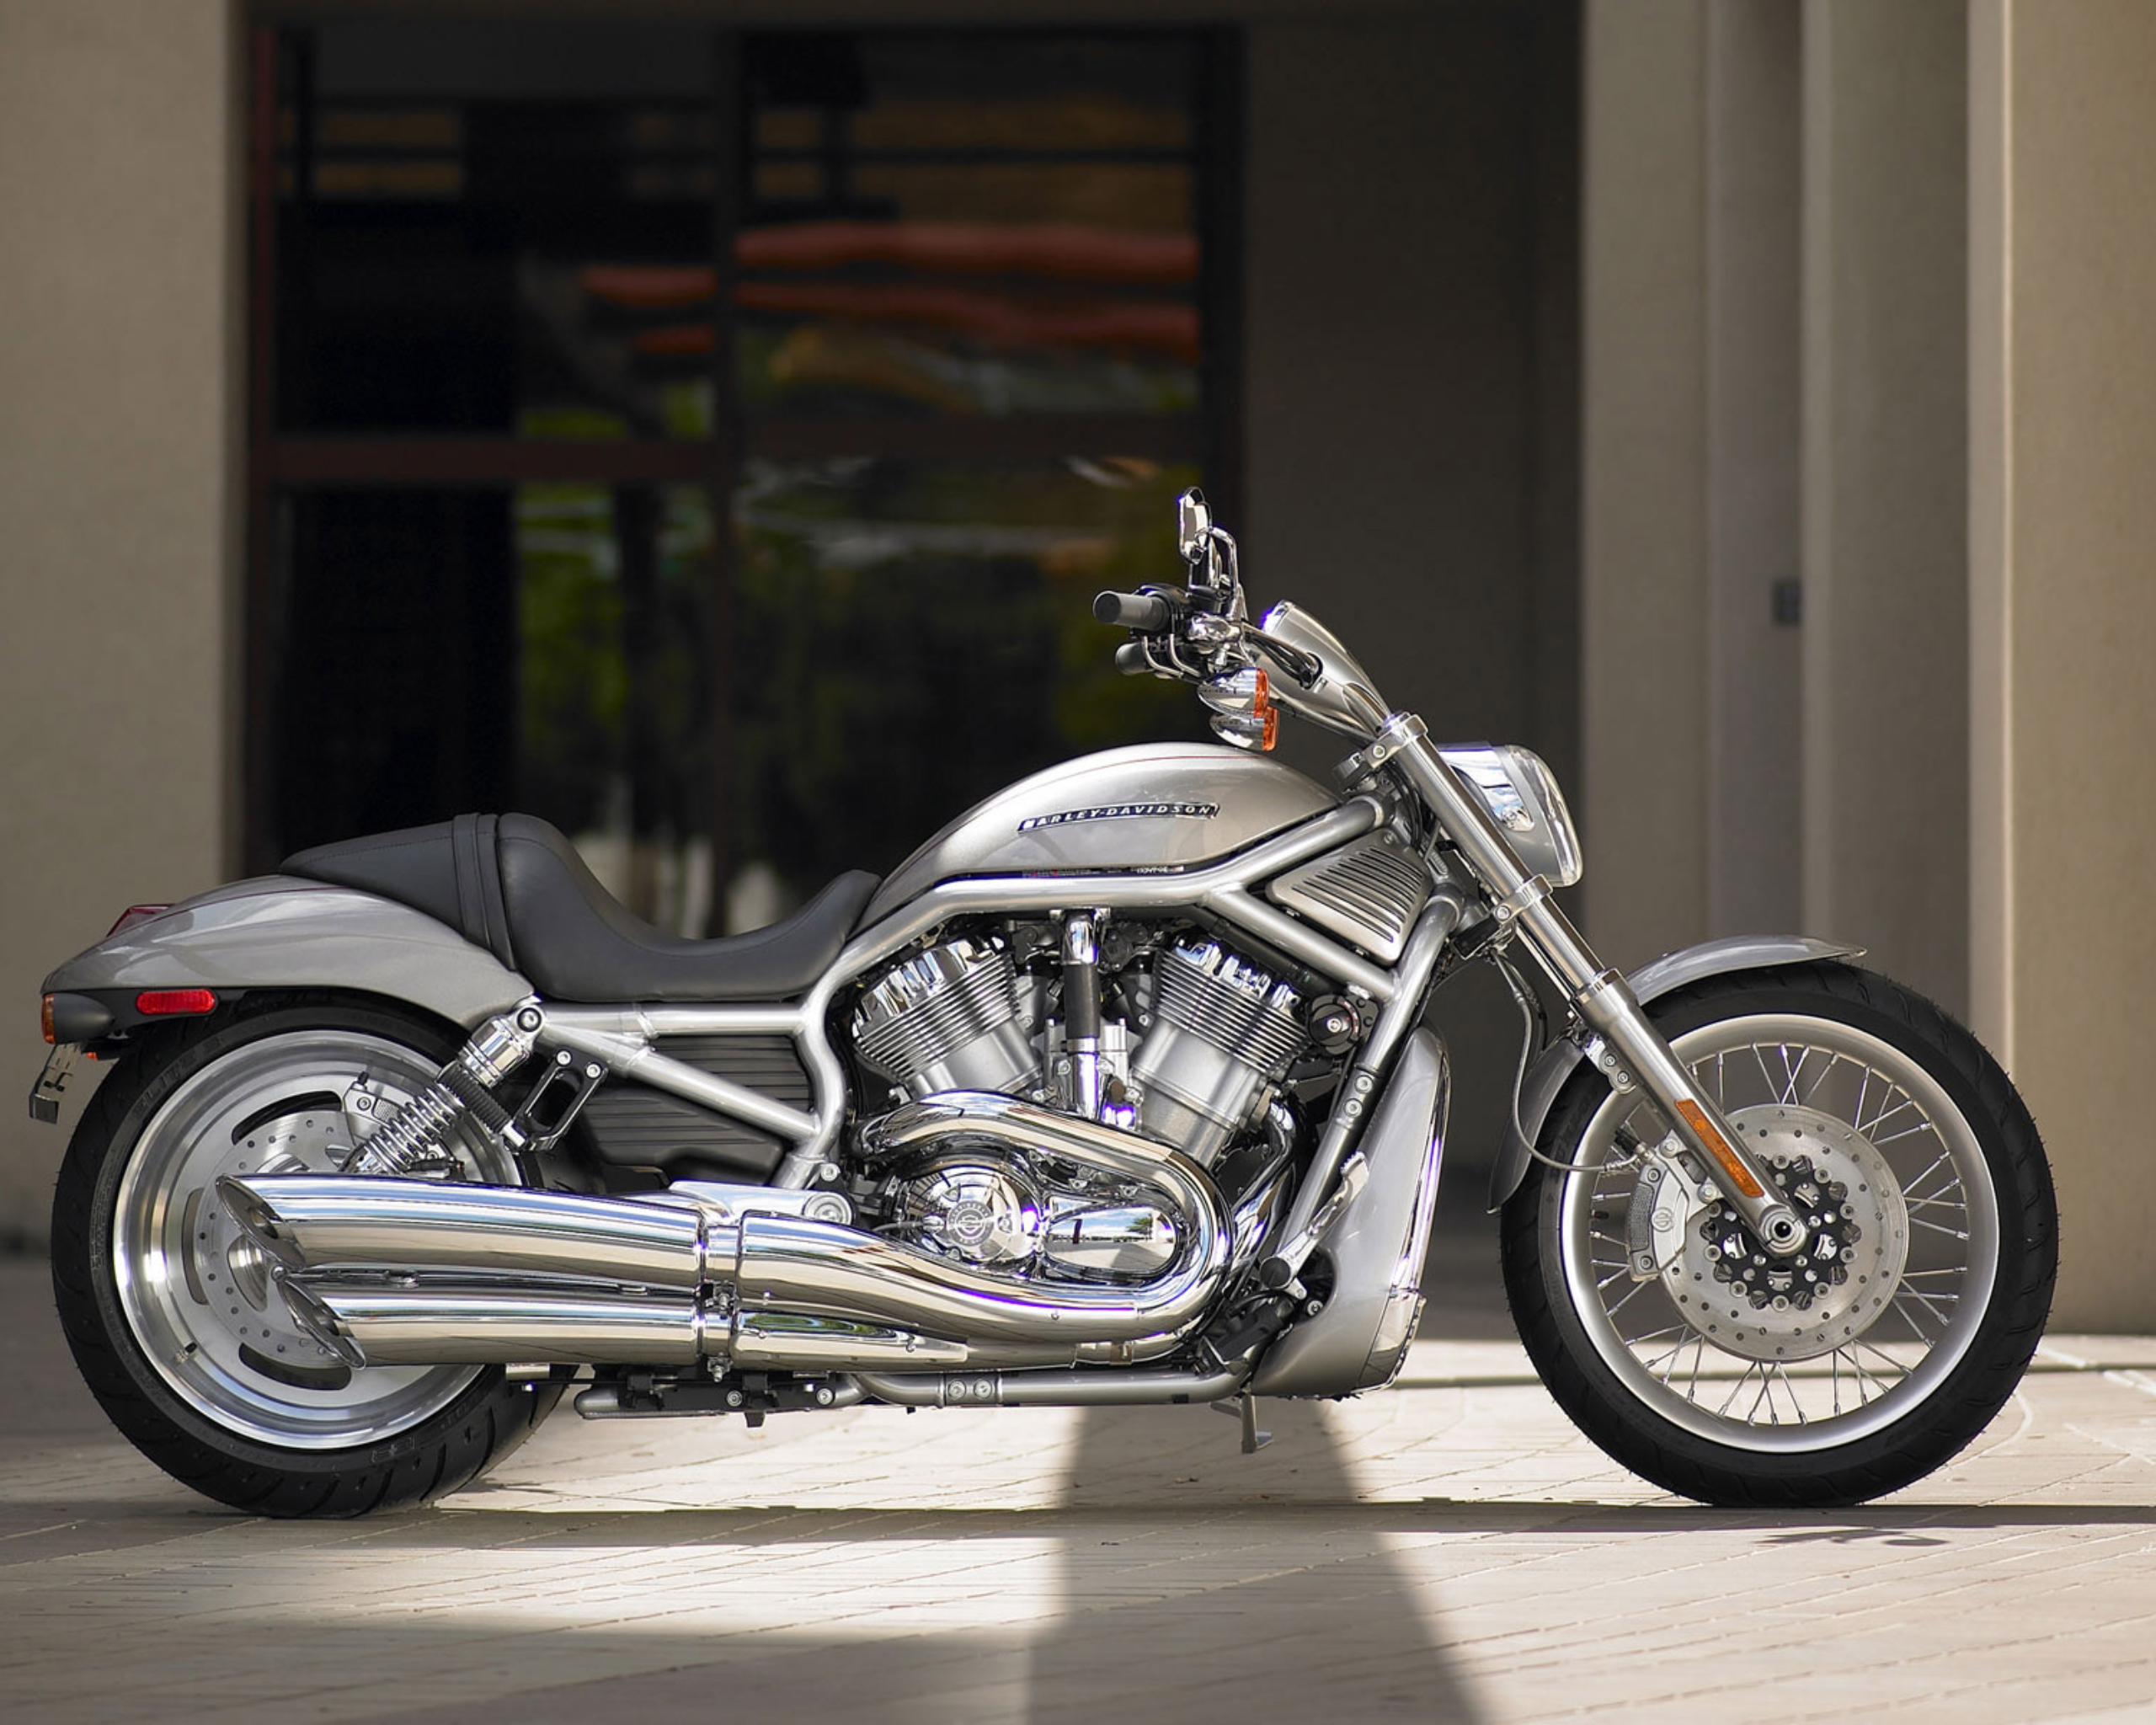 2008 Harley Davidson - Mini #10 - 2002 V-Rod